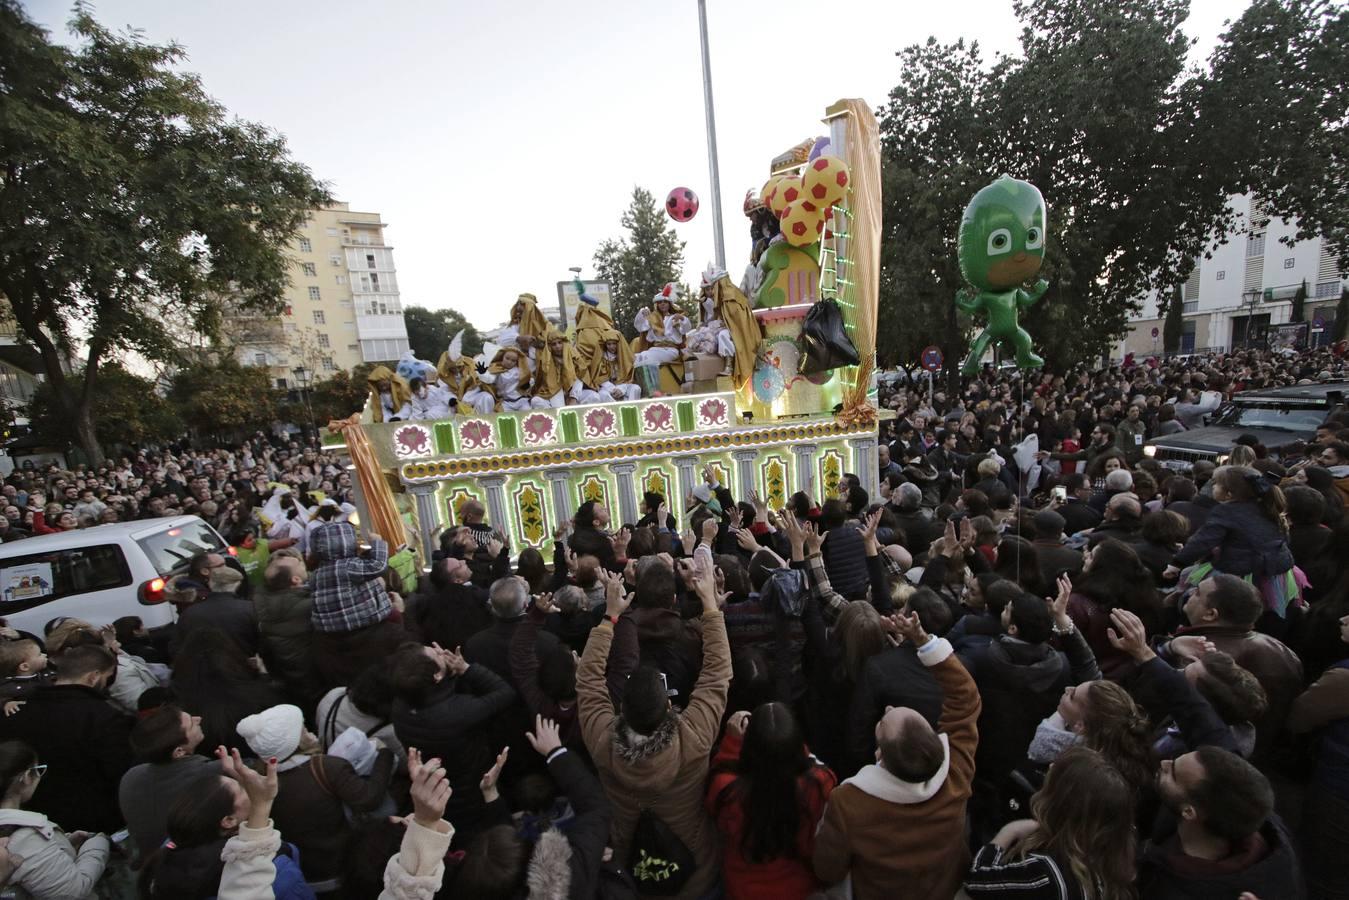 El barrio de Triana se vuelca con su Cabalgata de Reyes Magos